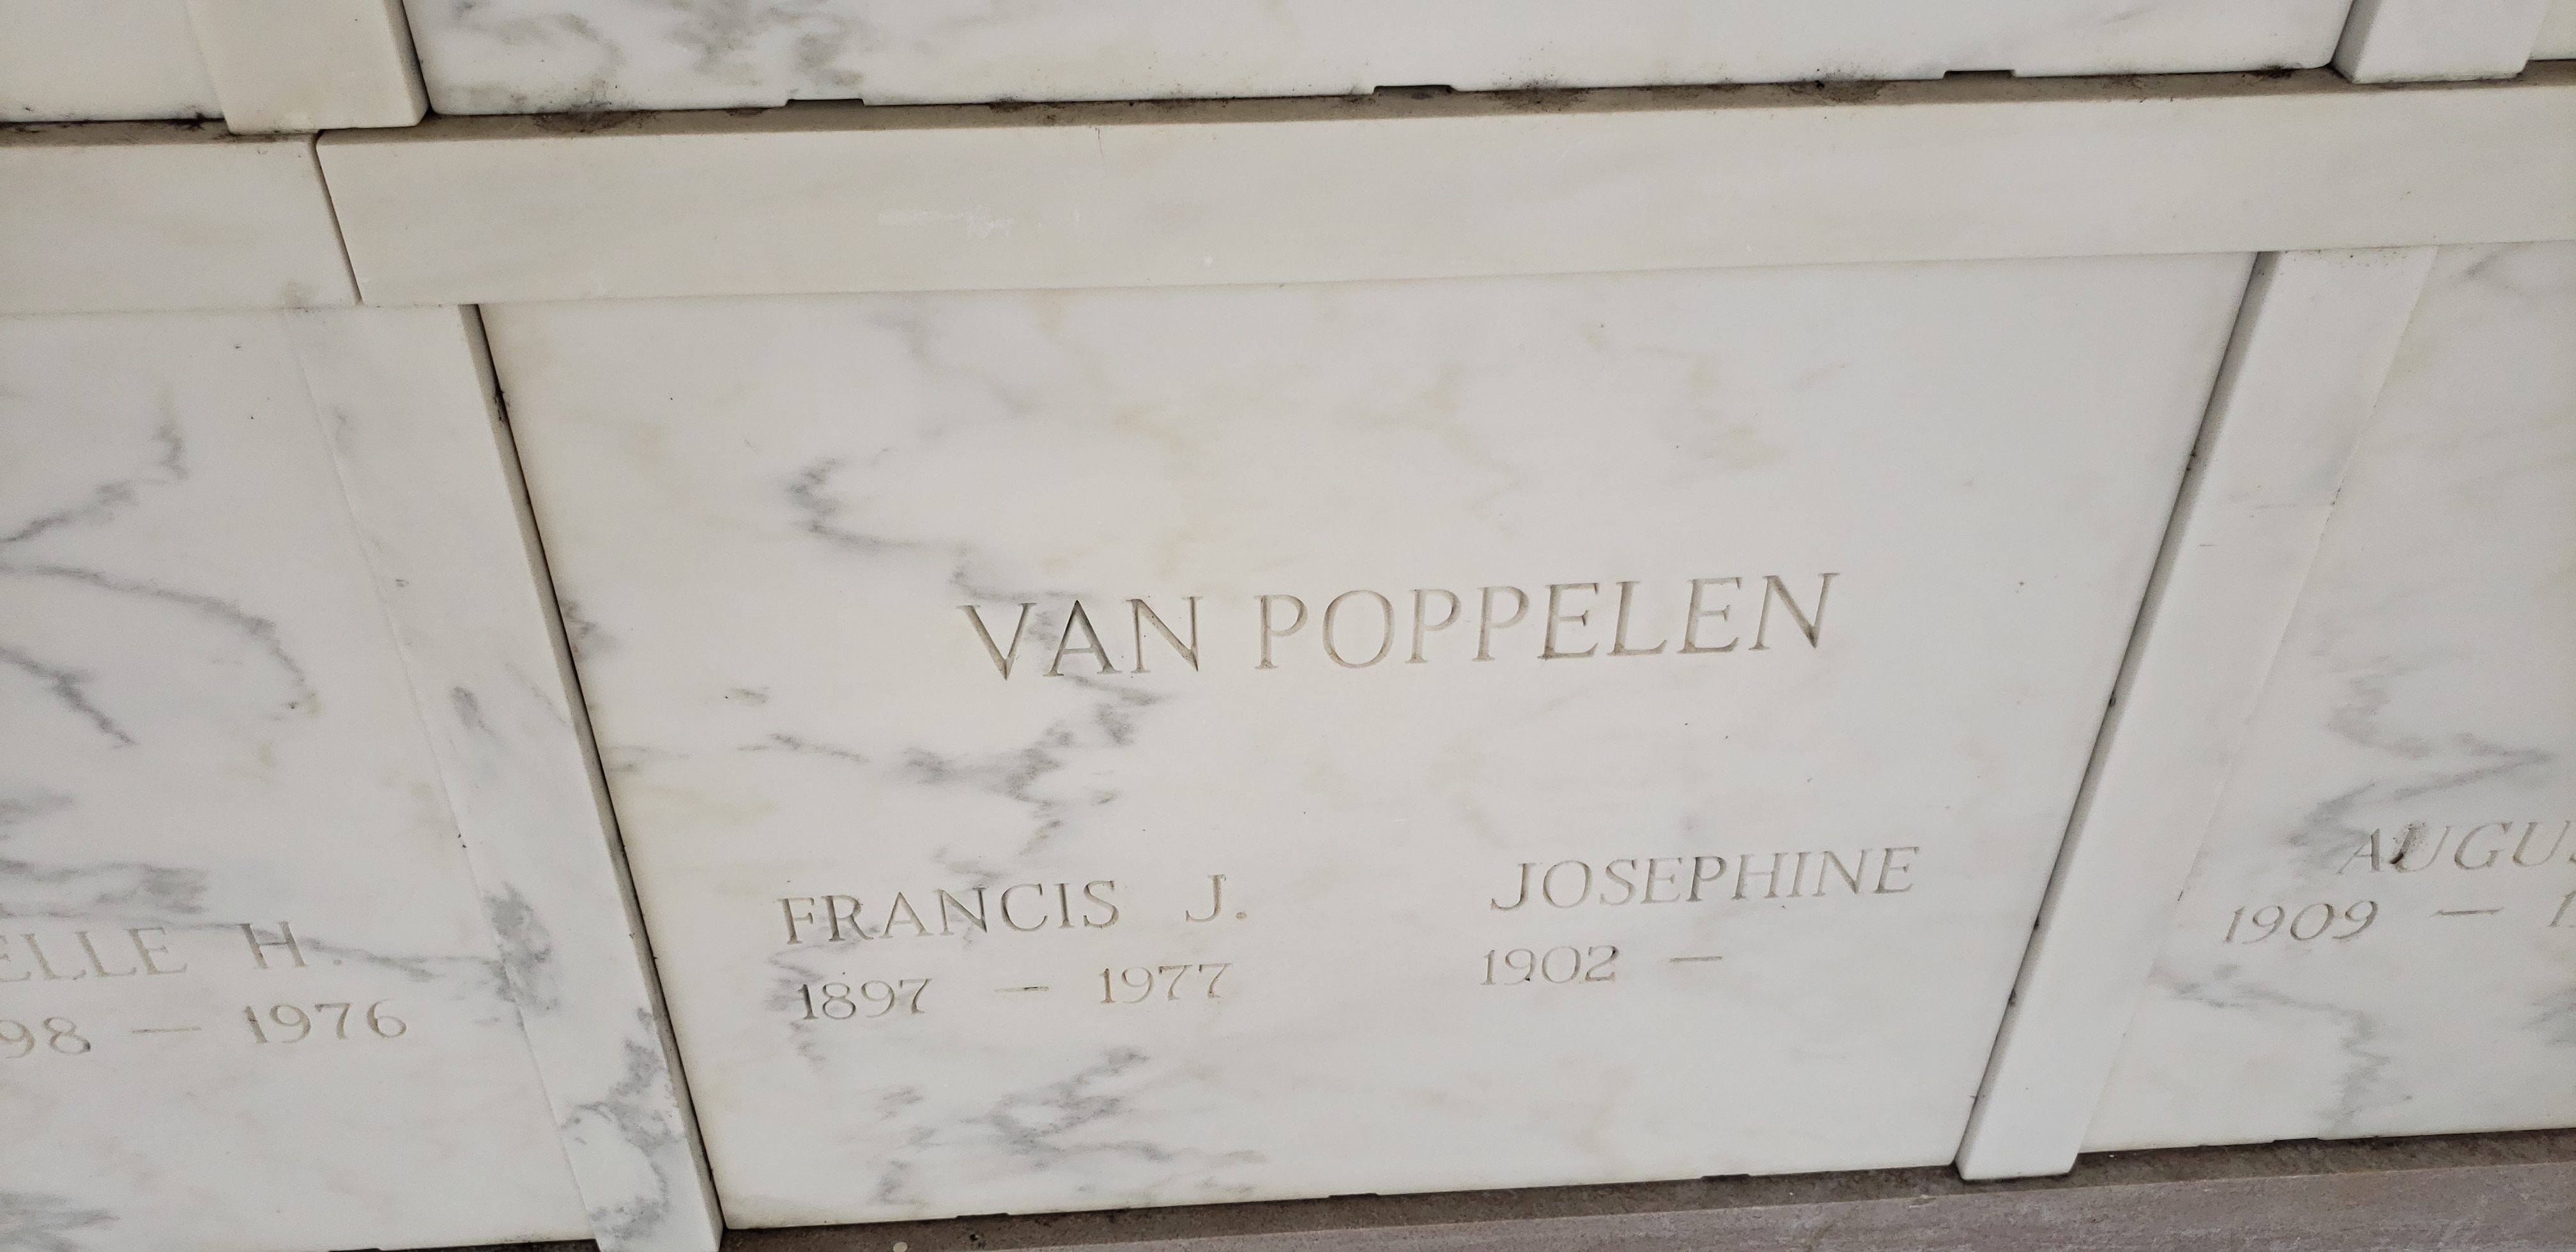 Josephine Van Poppelen